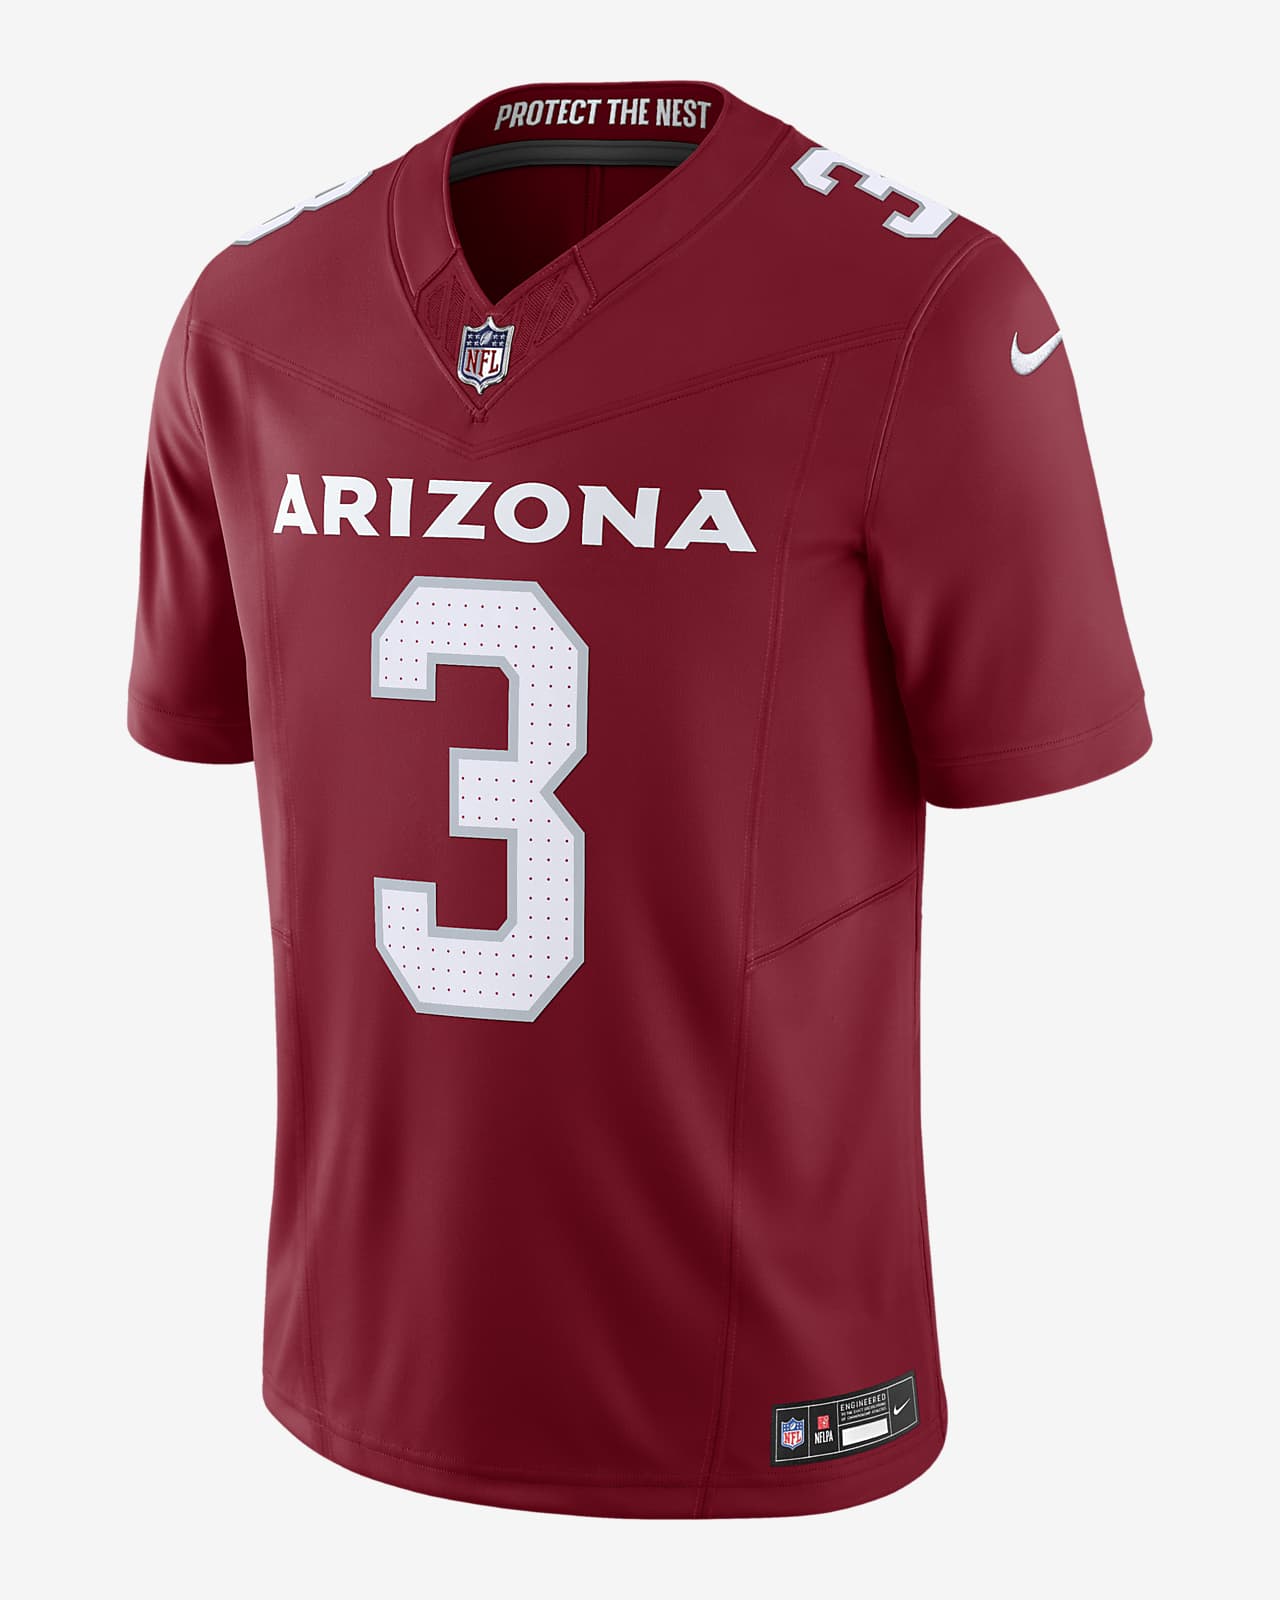 Jersey de fútbol americano Nike Dri-FIT de la NFL Limited para hombre Budda Baker Arizona Cardinals